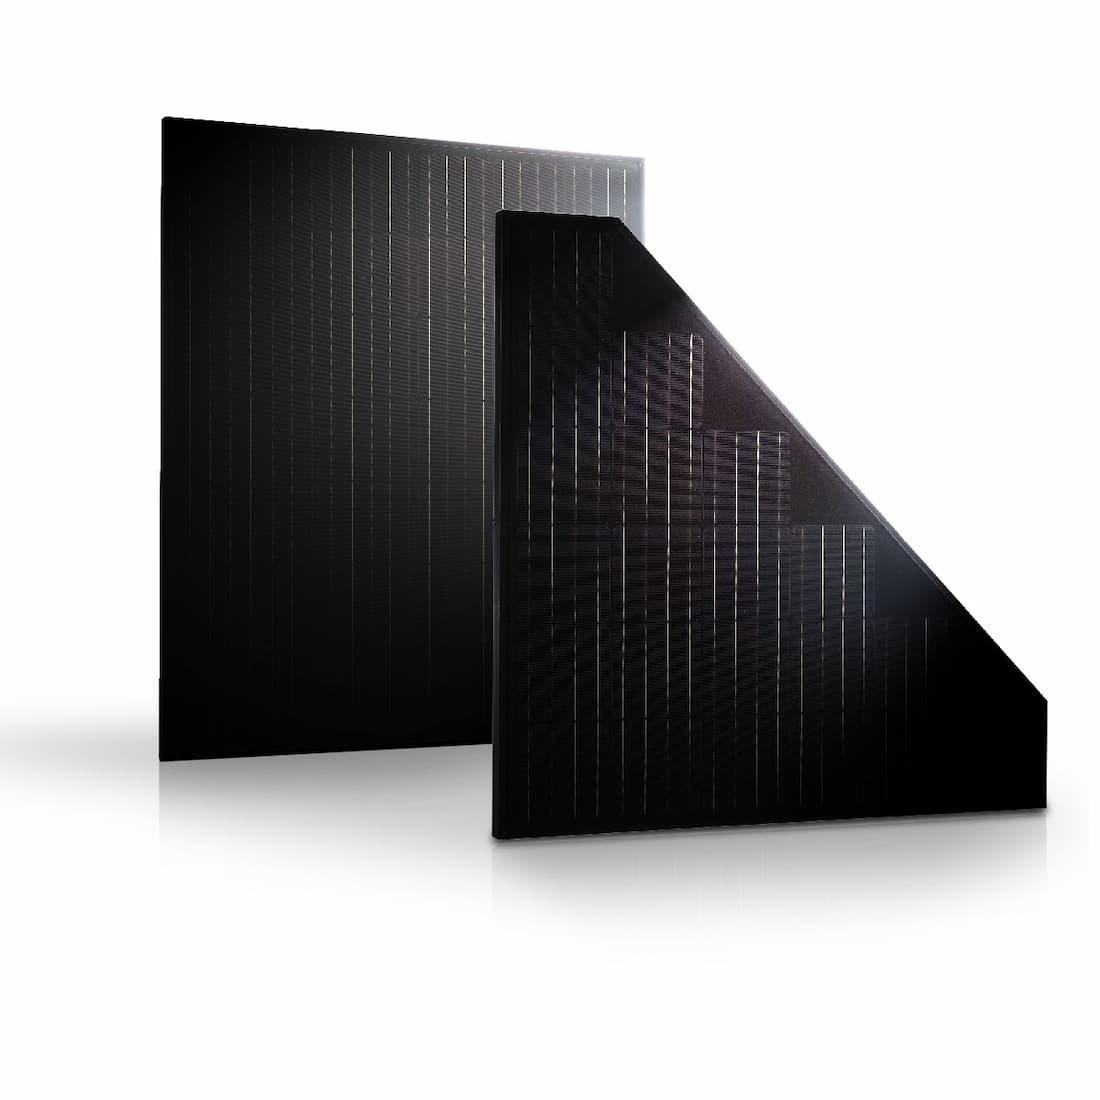 Sistemi fotovoltaici con back-contact, Trienergia